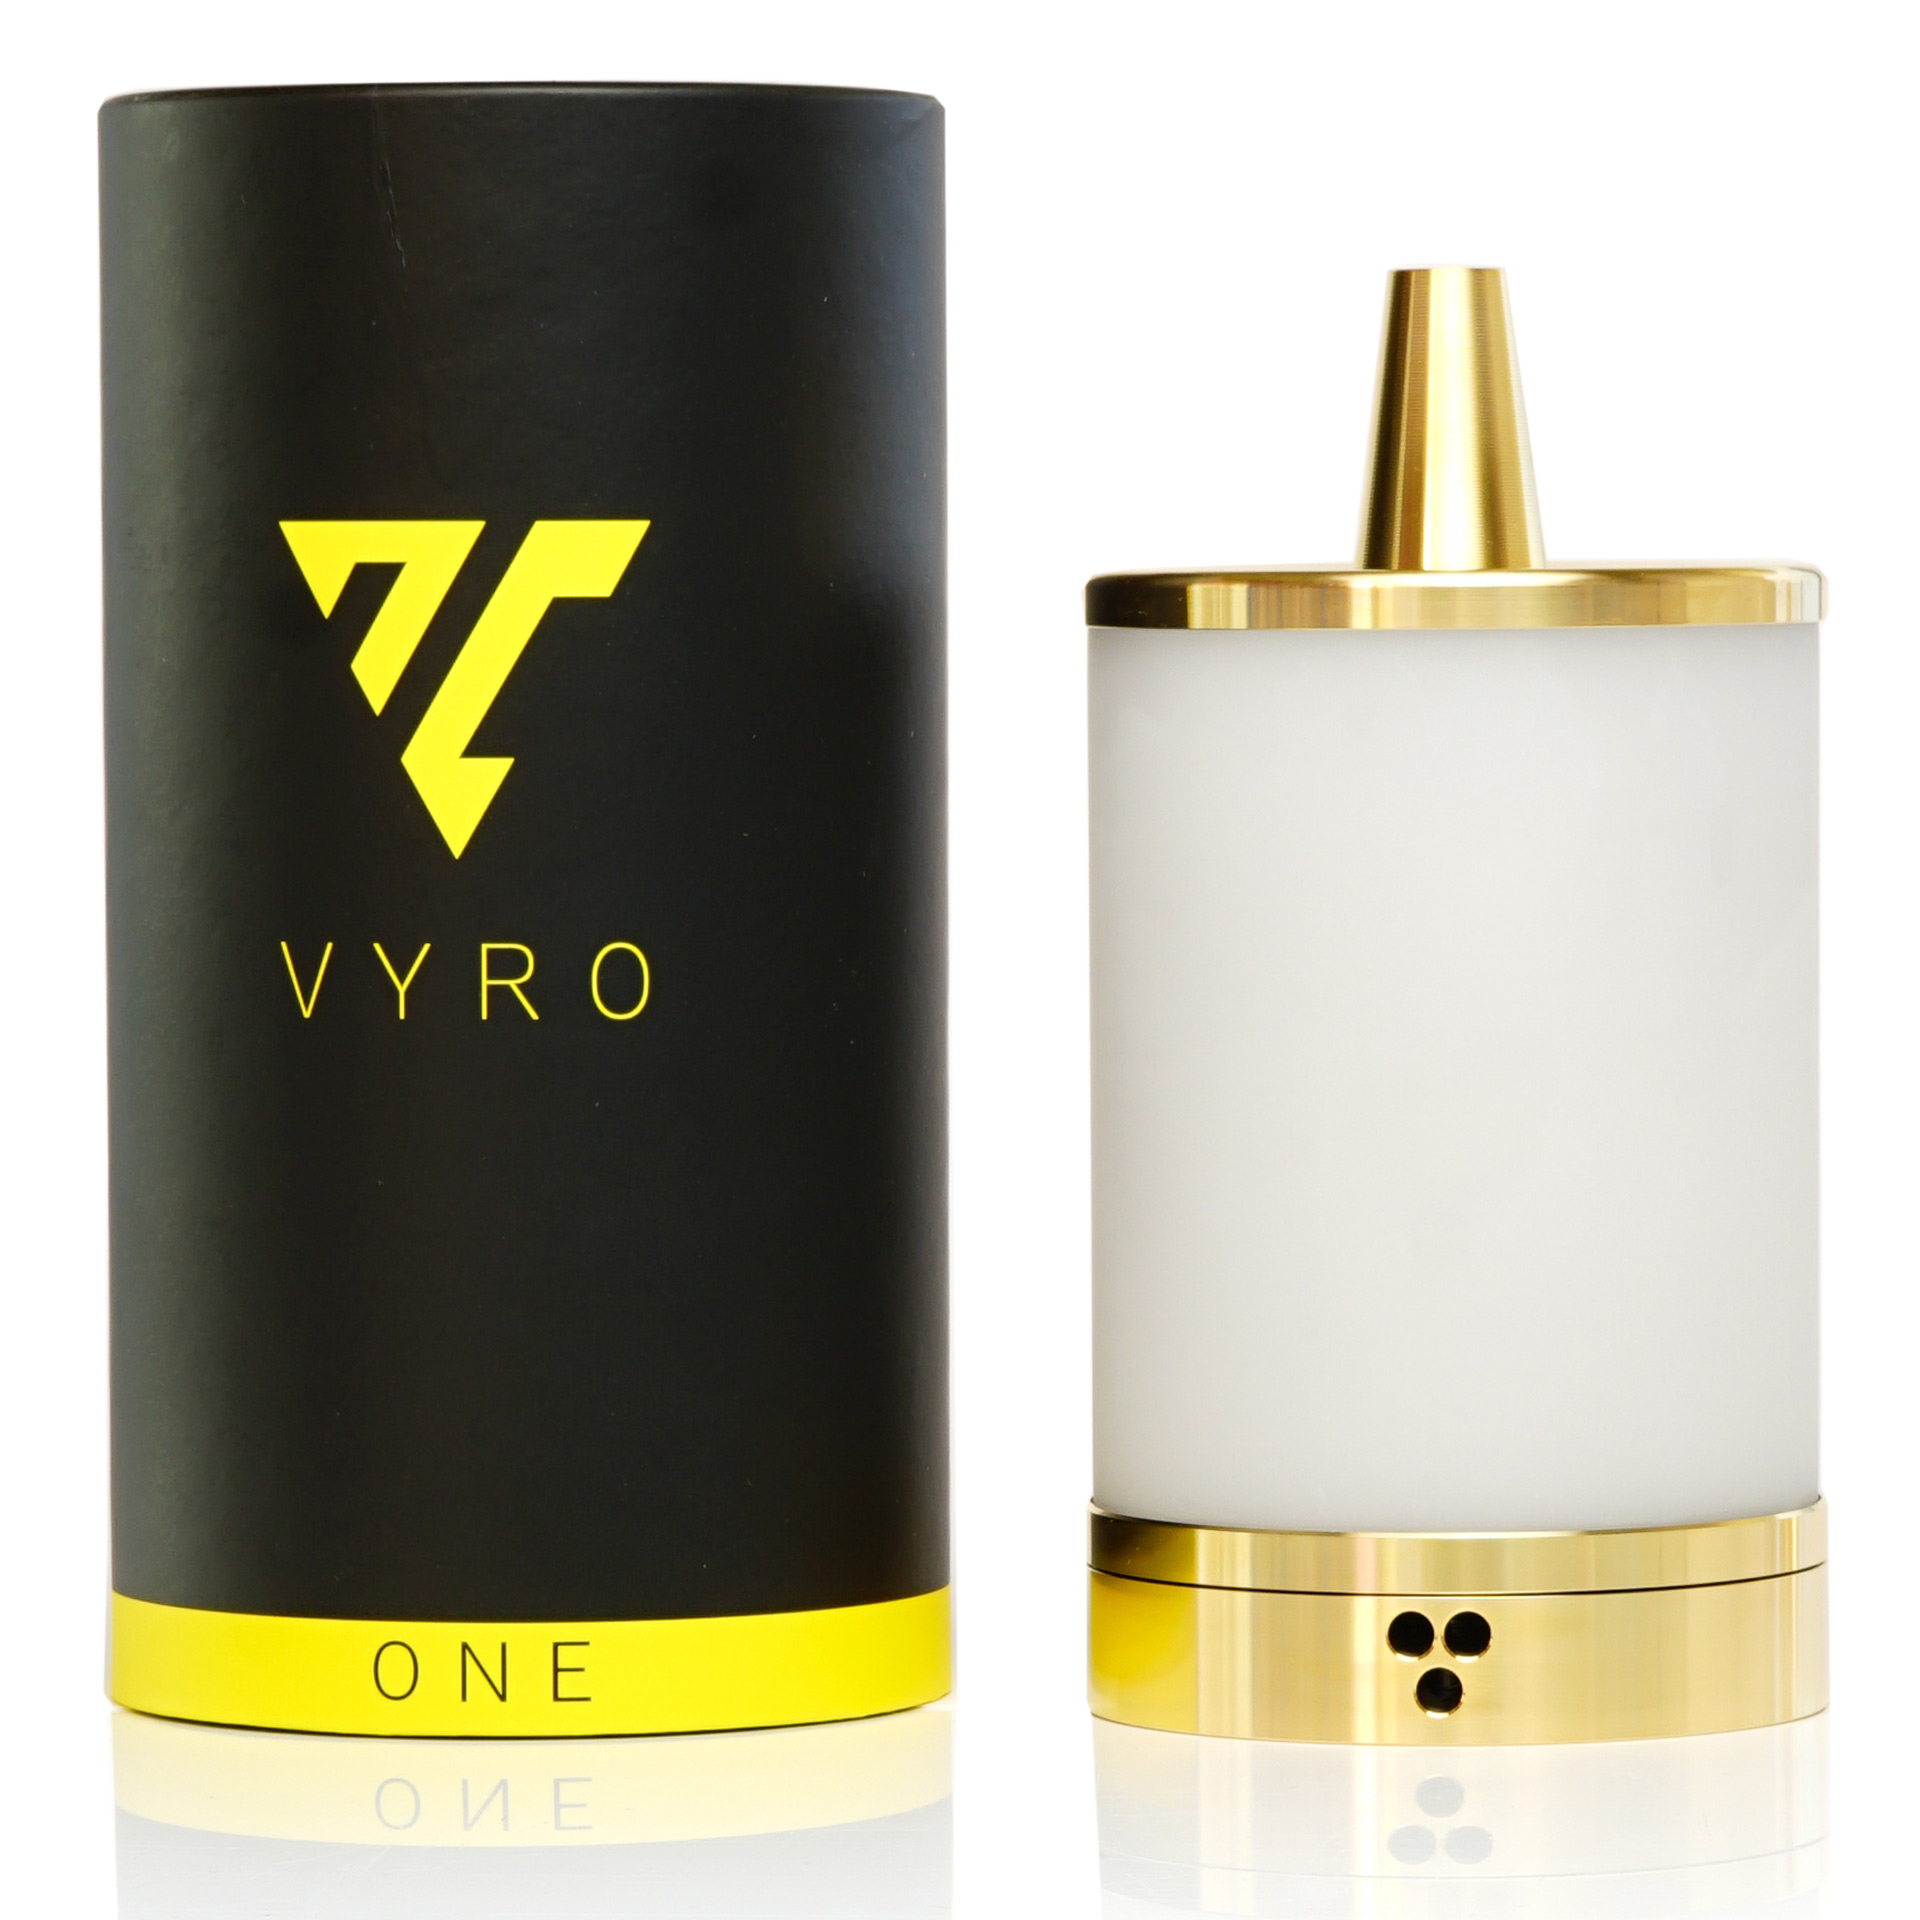 Vyro One / Frozen Ghost / 24 Karat Gold